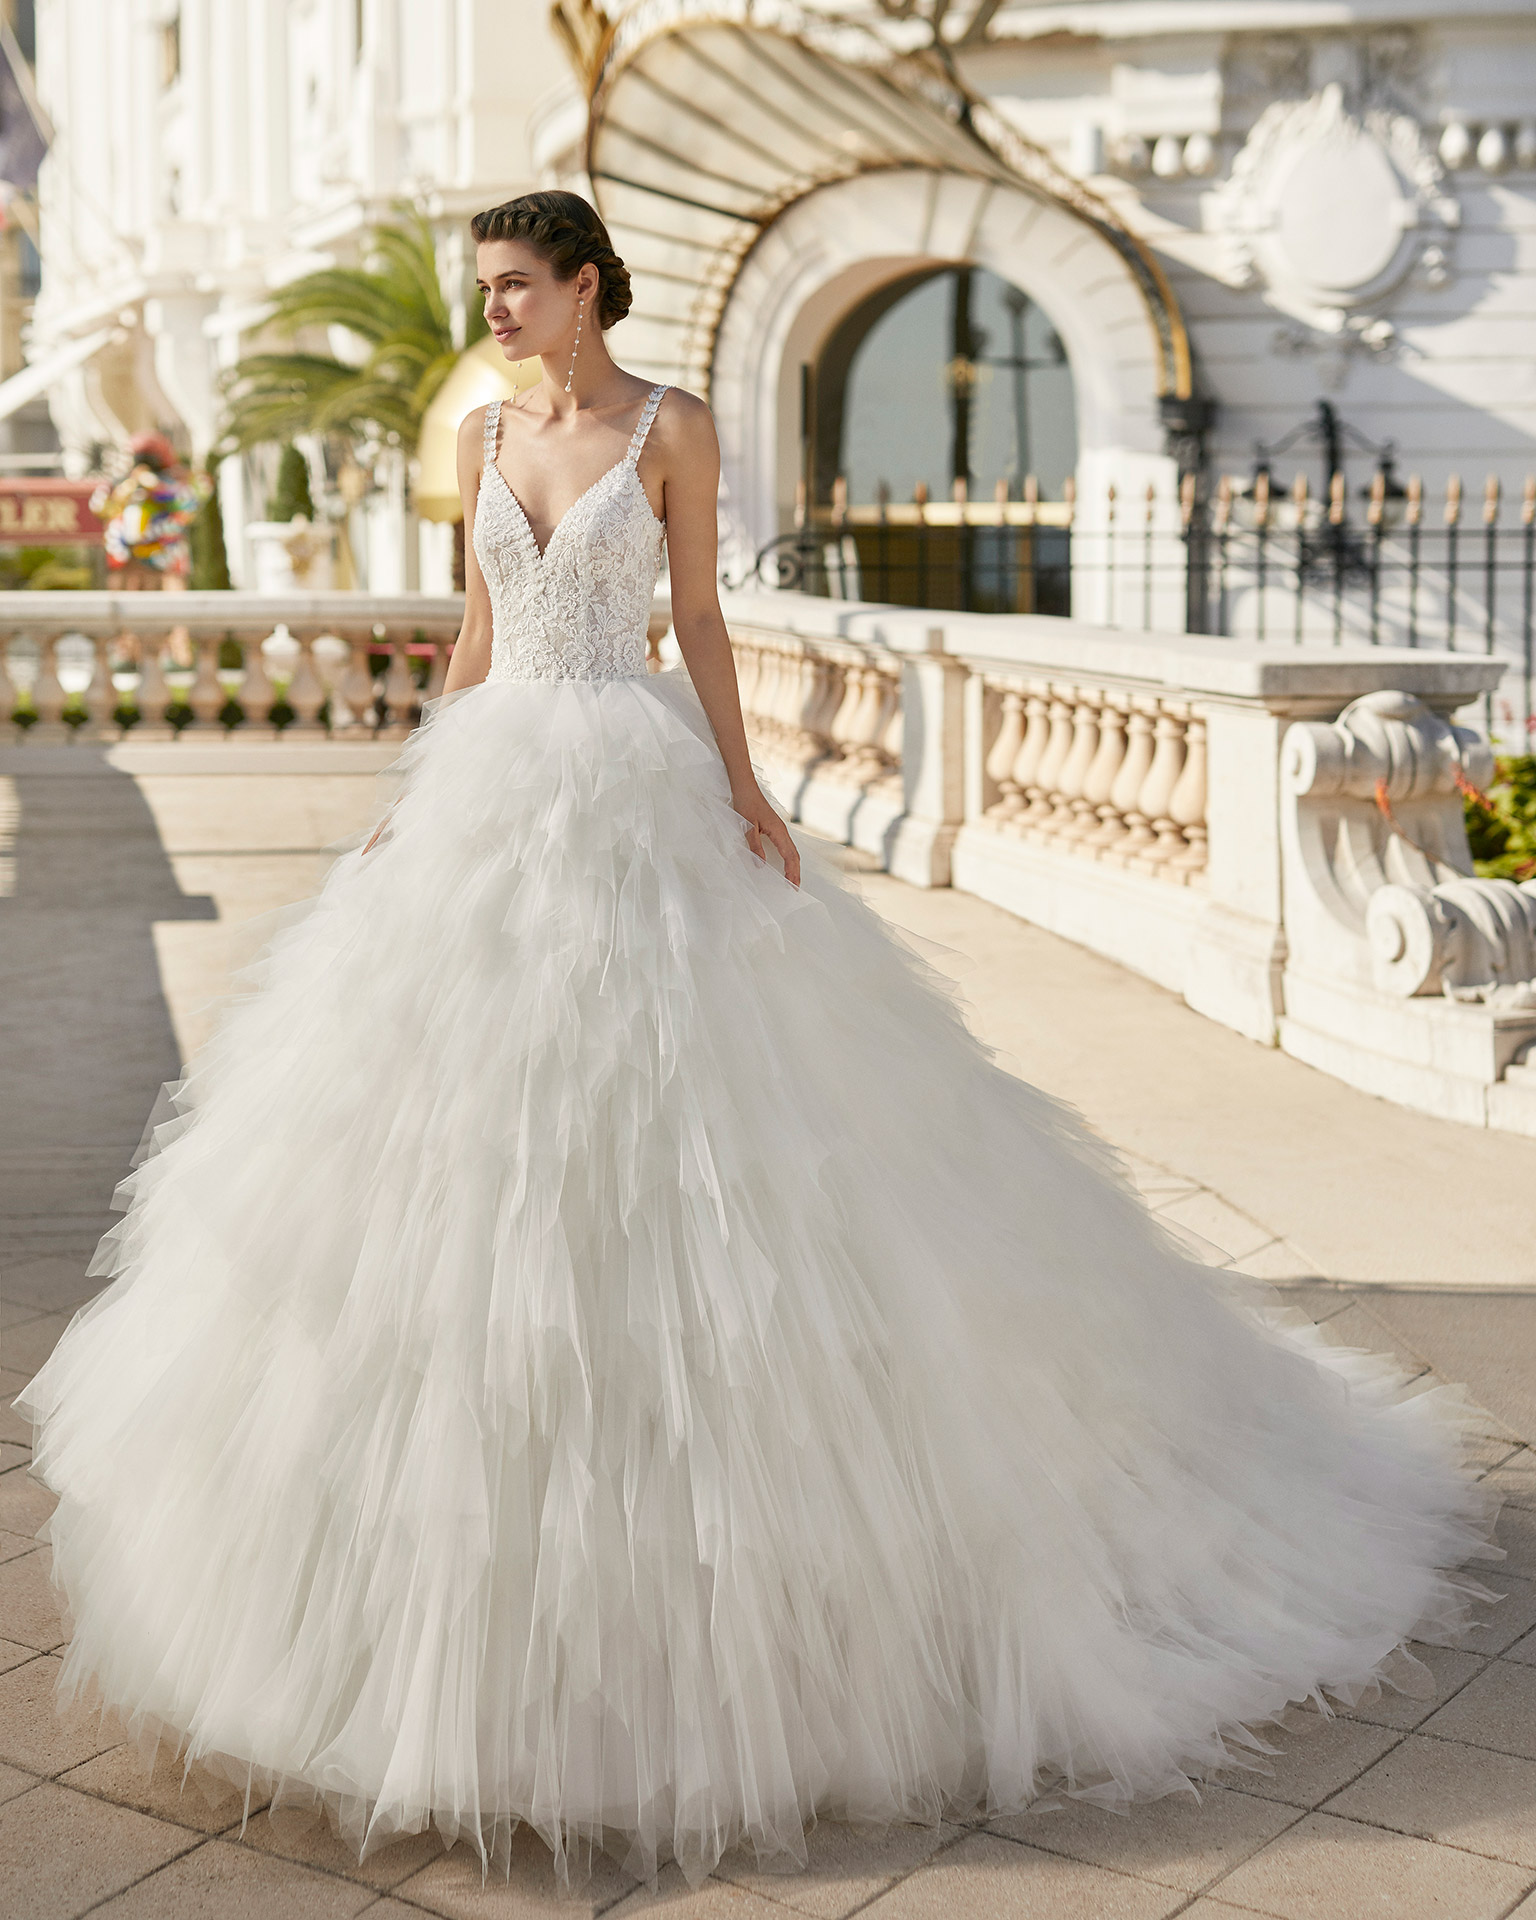 Brautkleider-Trends 2021: Die schönsten Hochzeitskleider 2021.